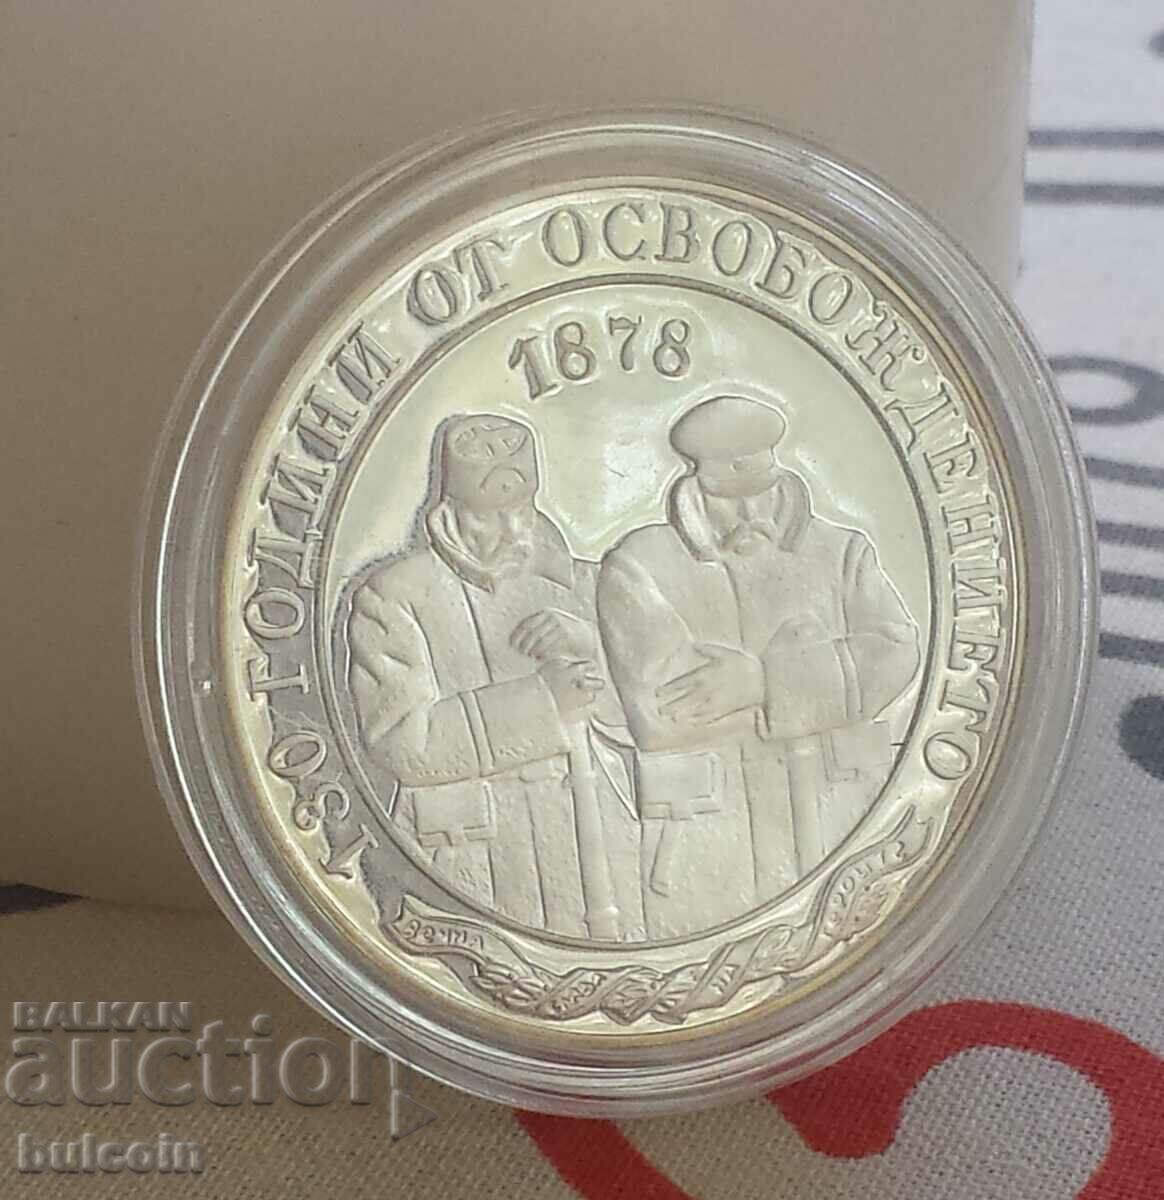 Moneda de argint 10 BGN 2008 / 130 de ani de la Eliberare